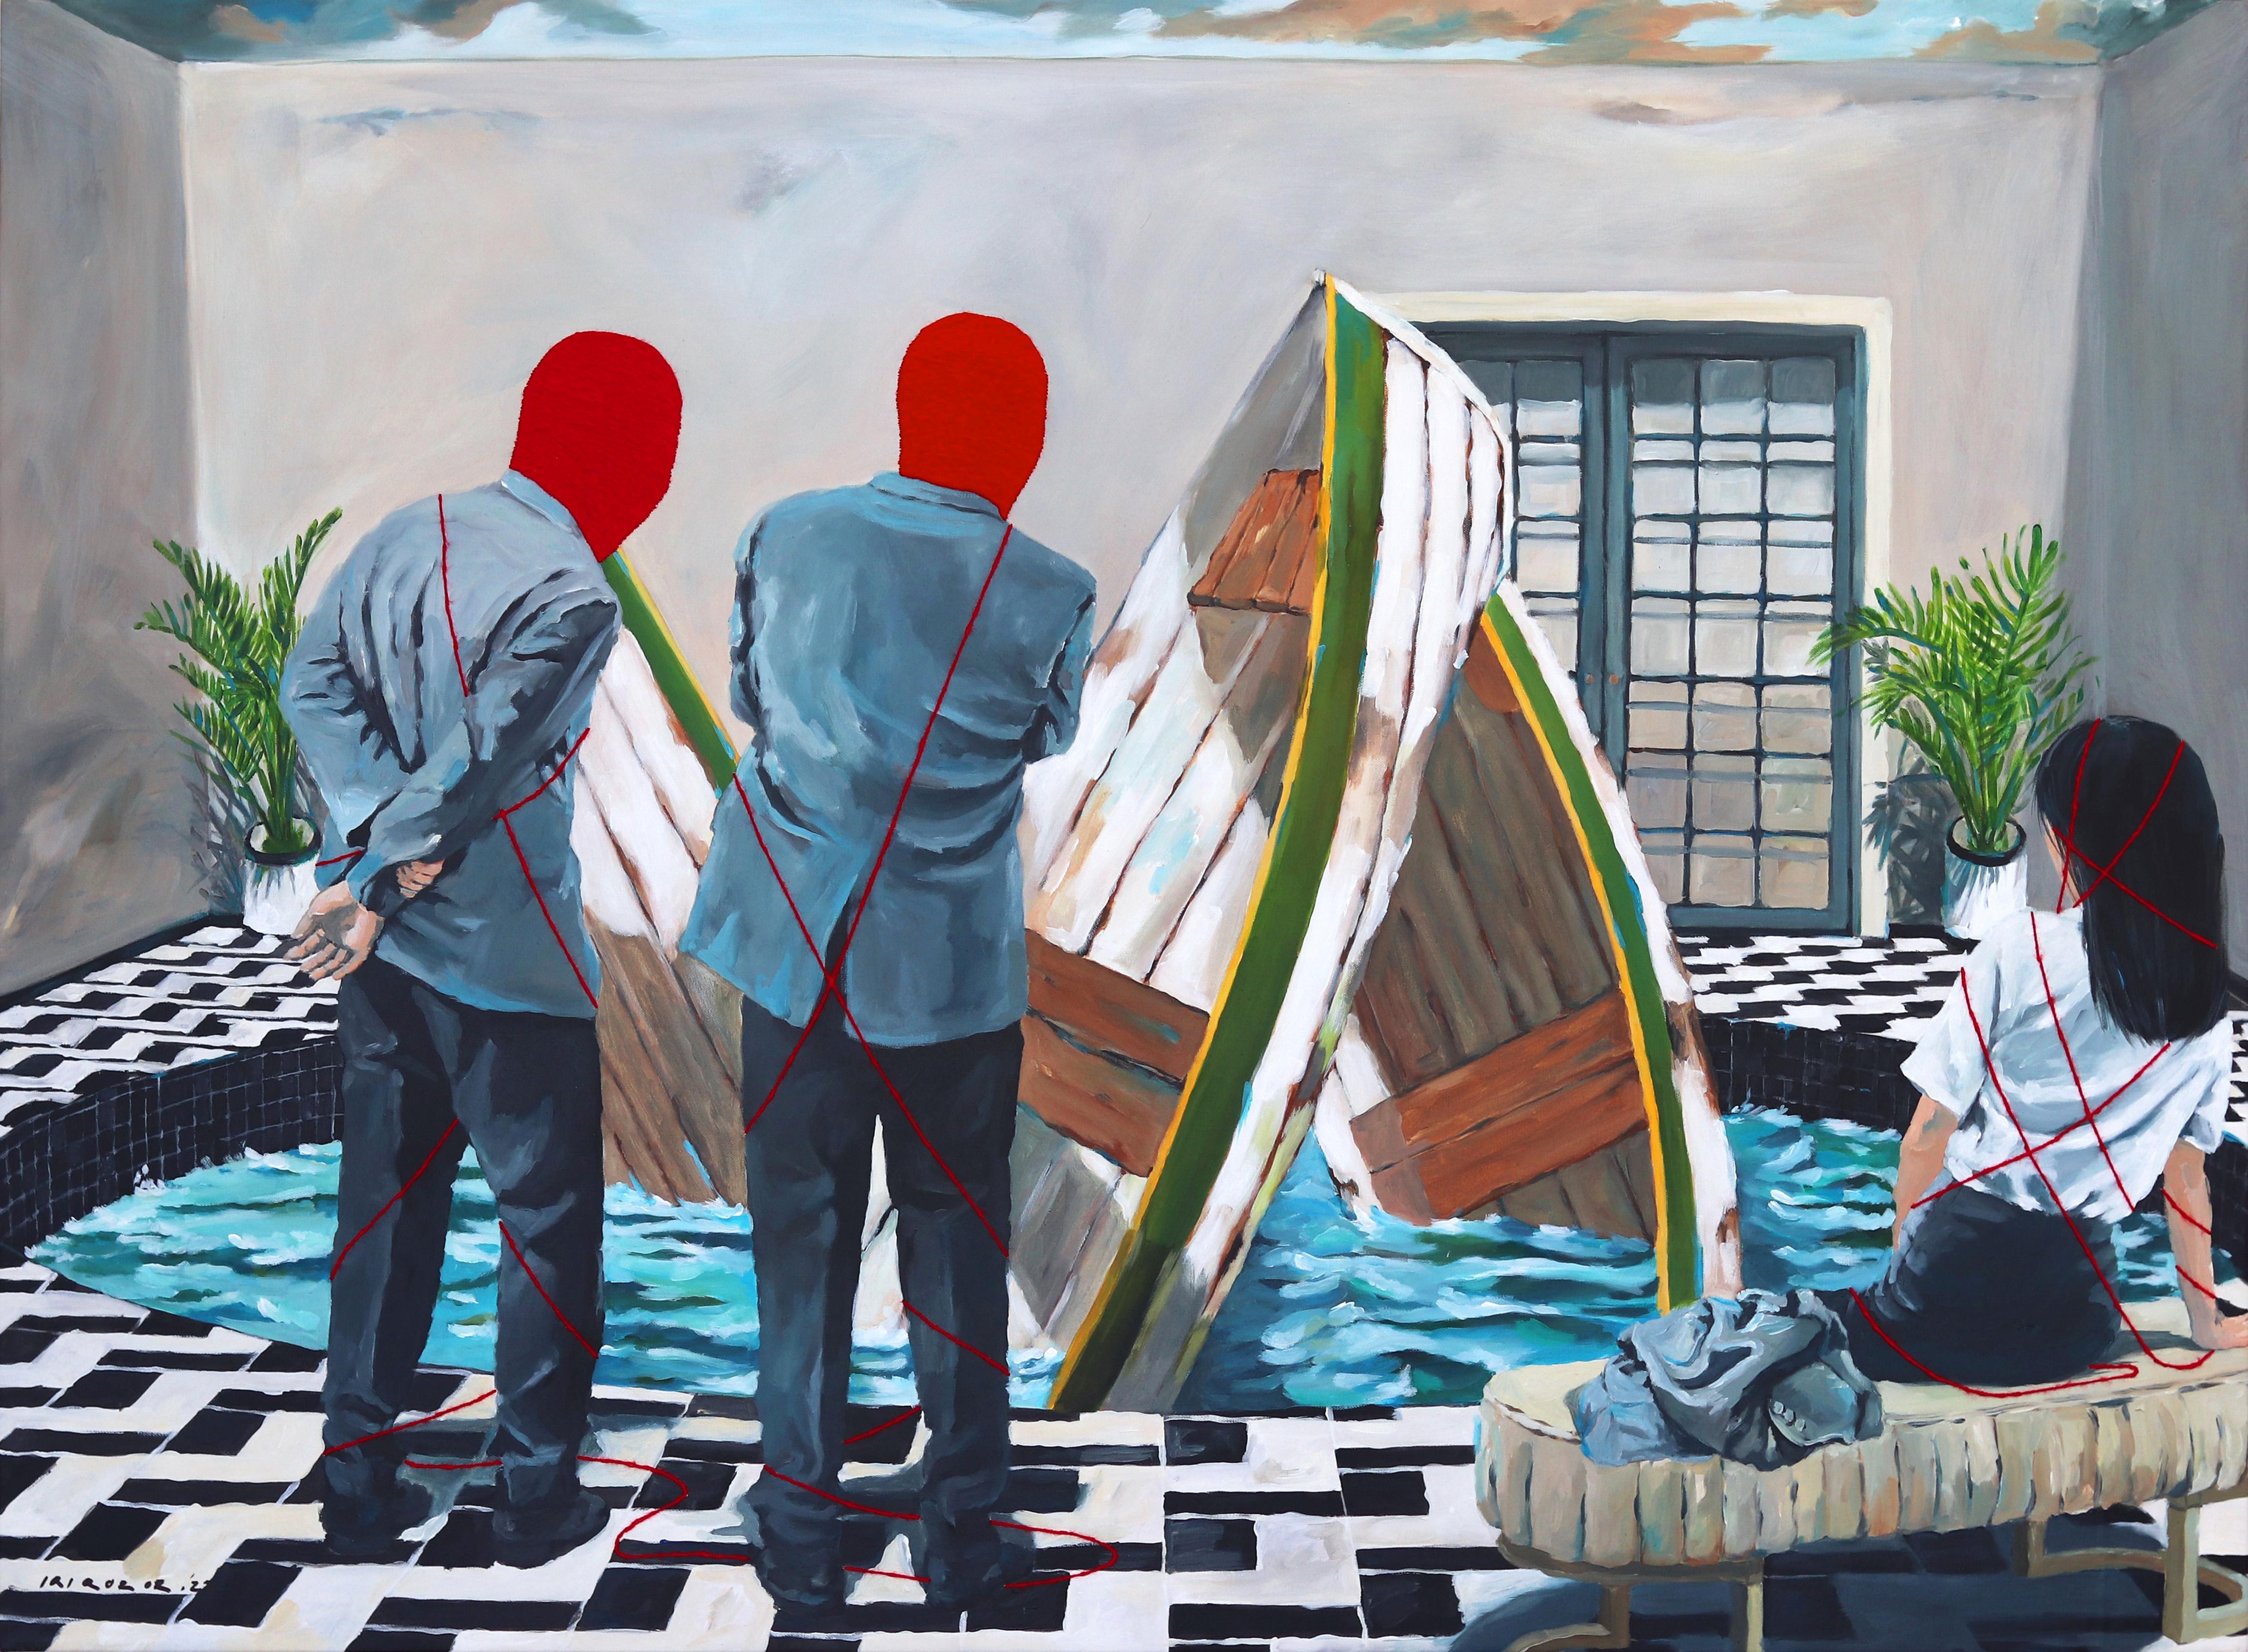 Dreireihiger Boot – Original Surrealistische Mixed Media auf Leinwand von Iqi Qoror